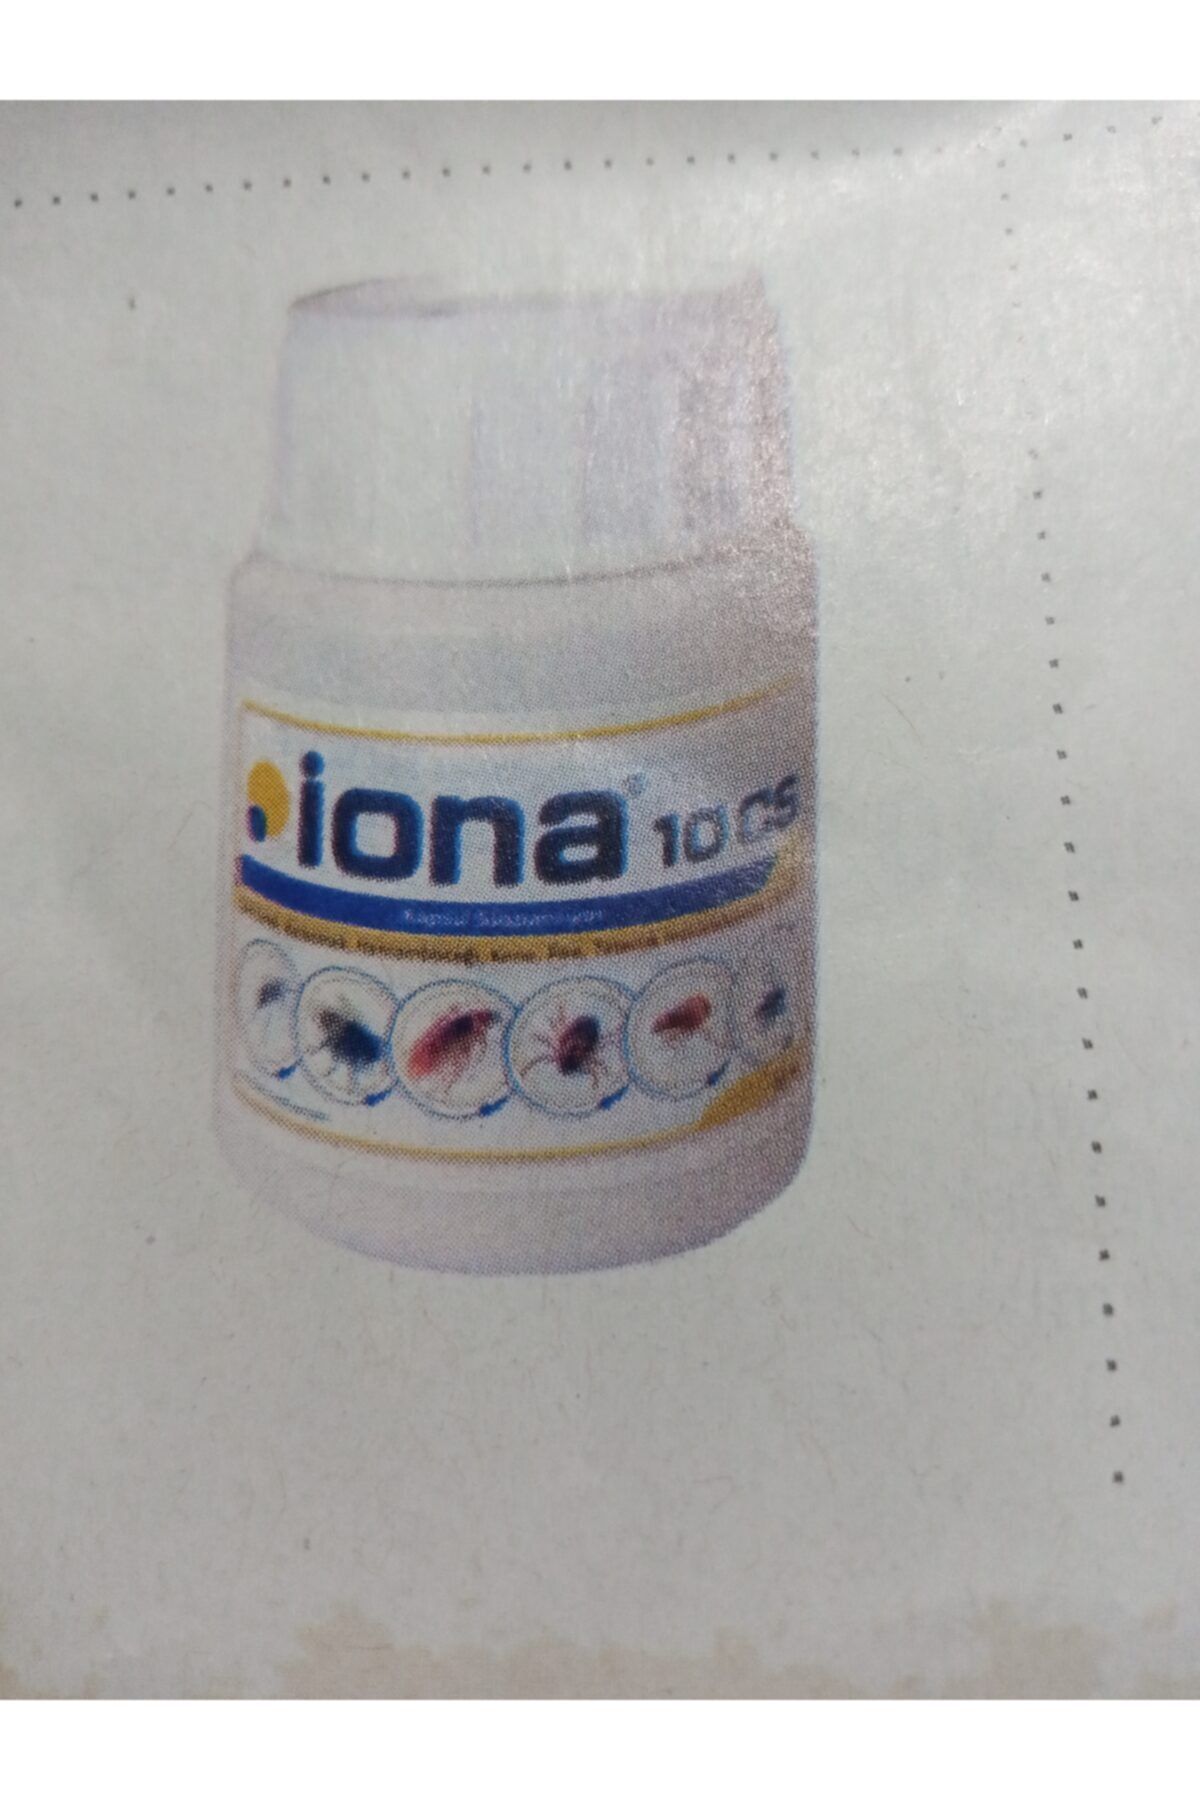 çerçi Iona 10cs Likit Böcek Ilacı 50ml